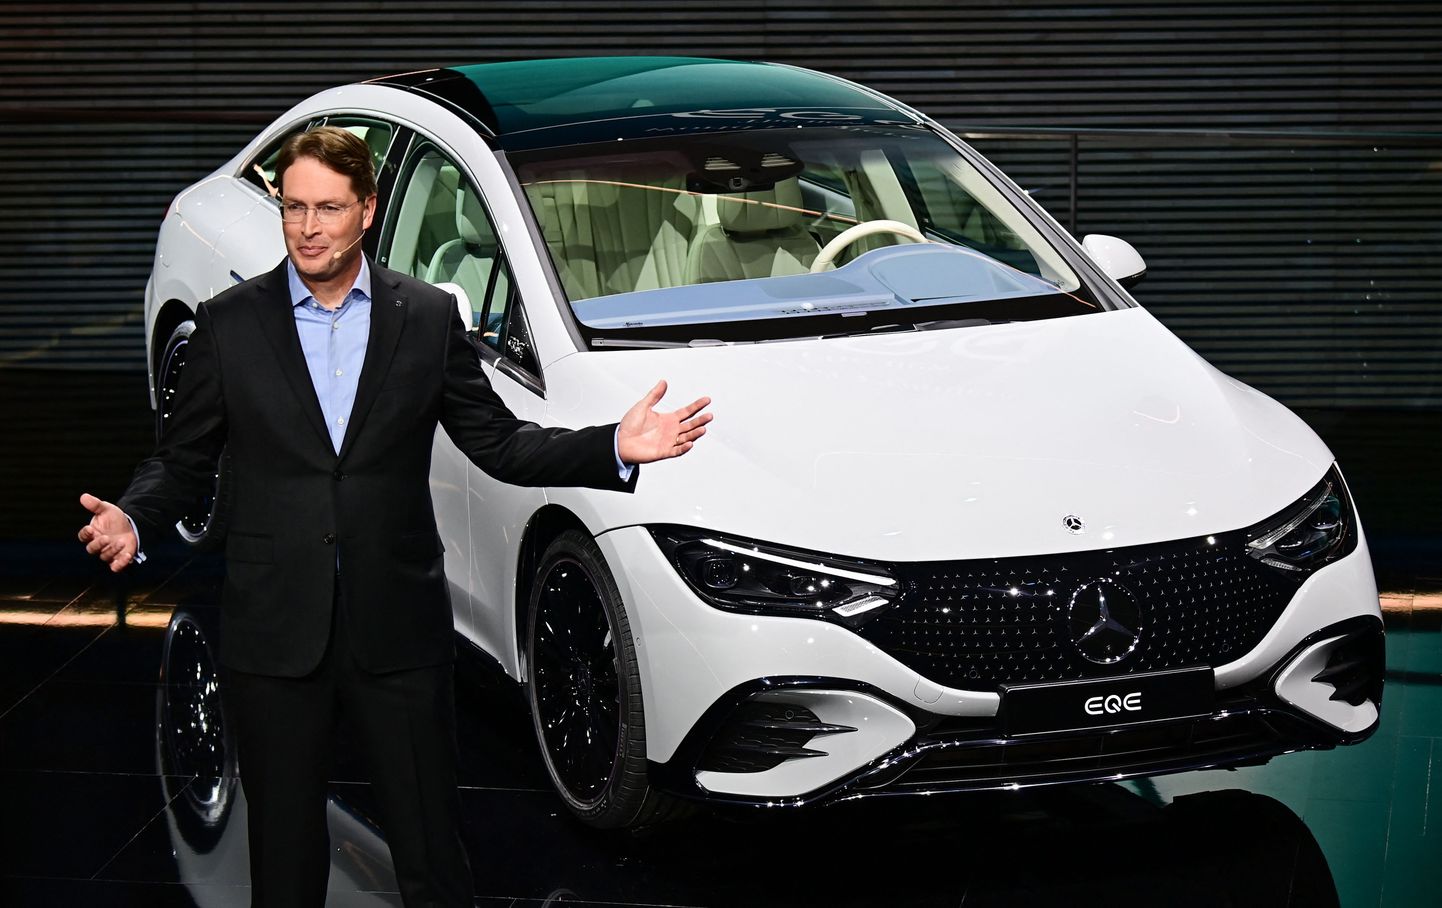 Daimleri juht Ola Kaellenius tutvustas septembri alguses Müncheni messil uut Mercedes-Benzi mudelit EQE.